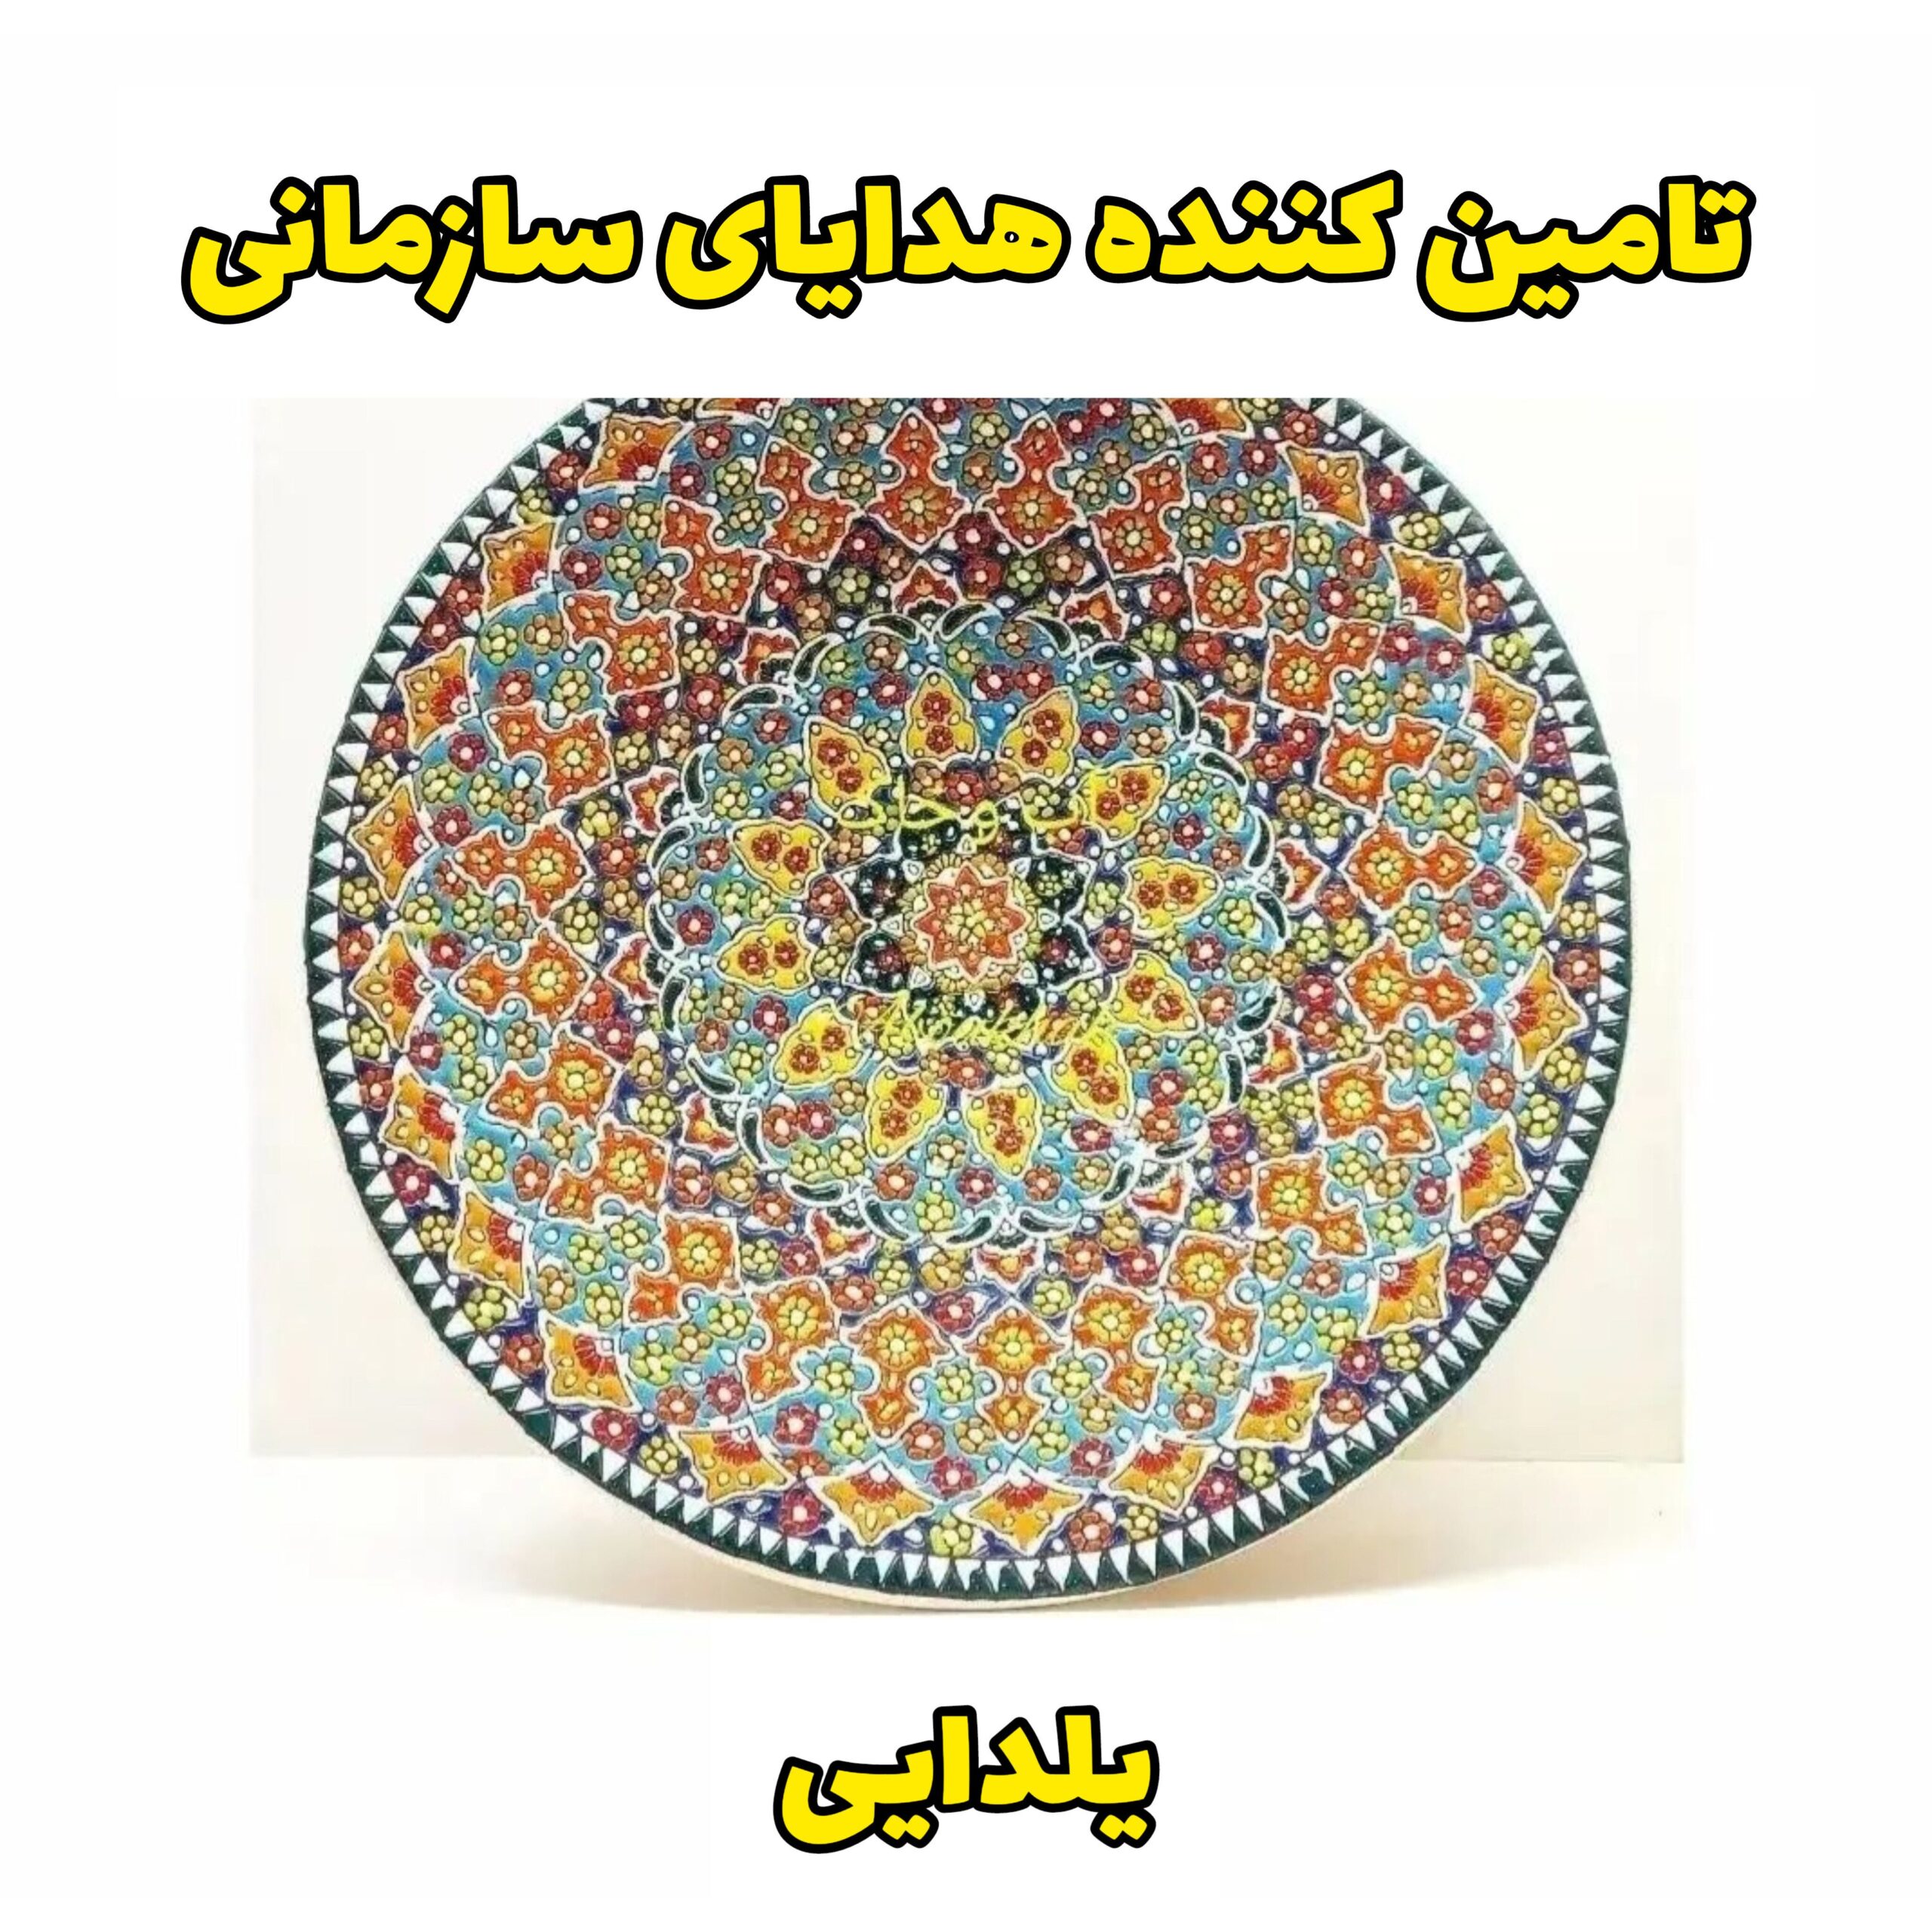 هدایای تبلیغاتی شب یلدا صنایع دستی